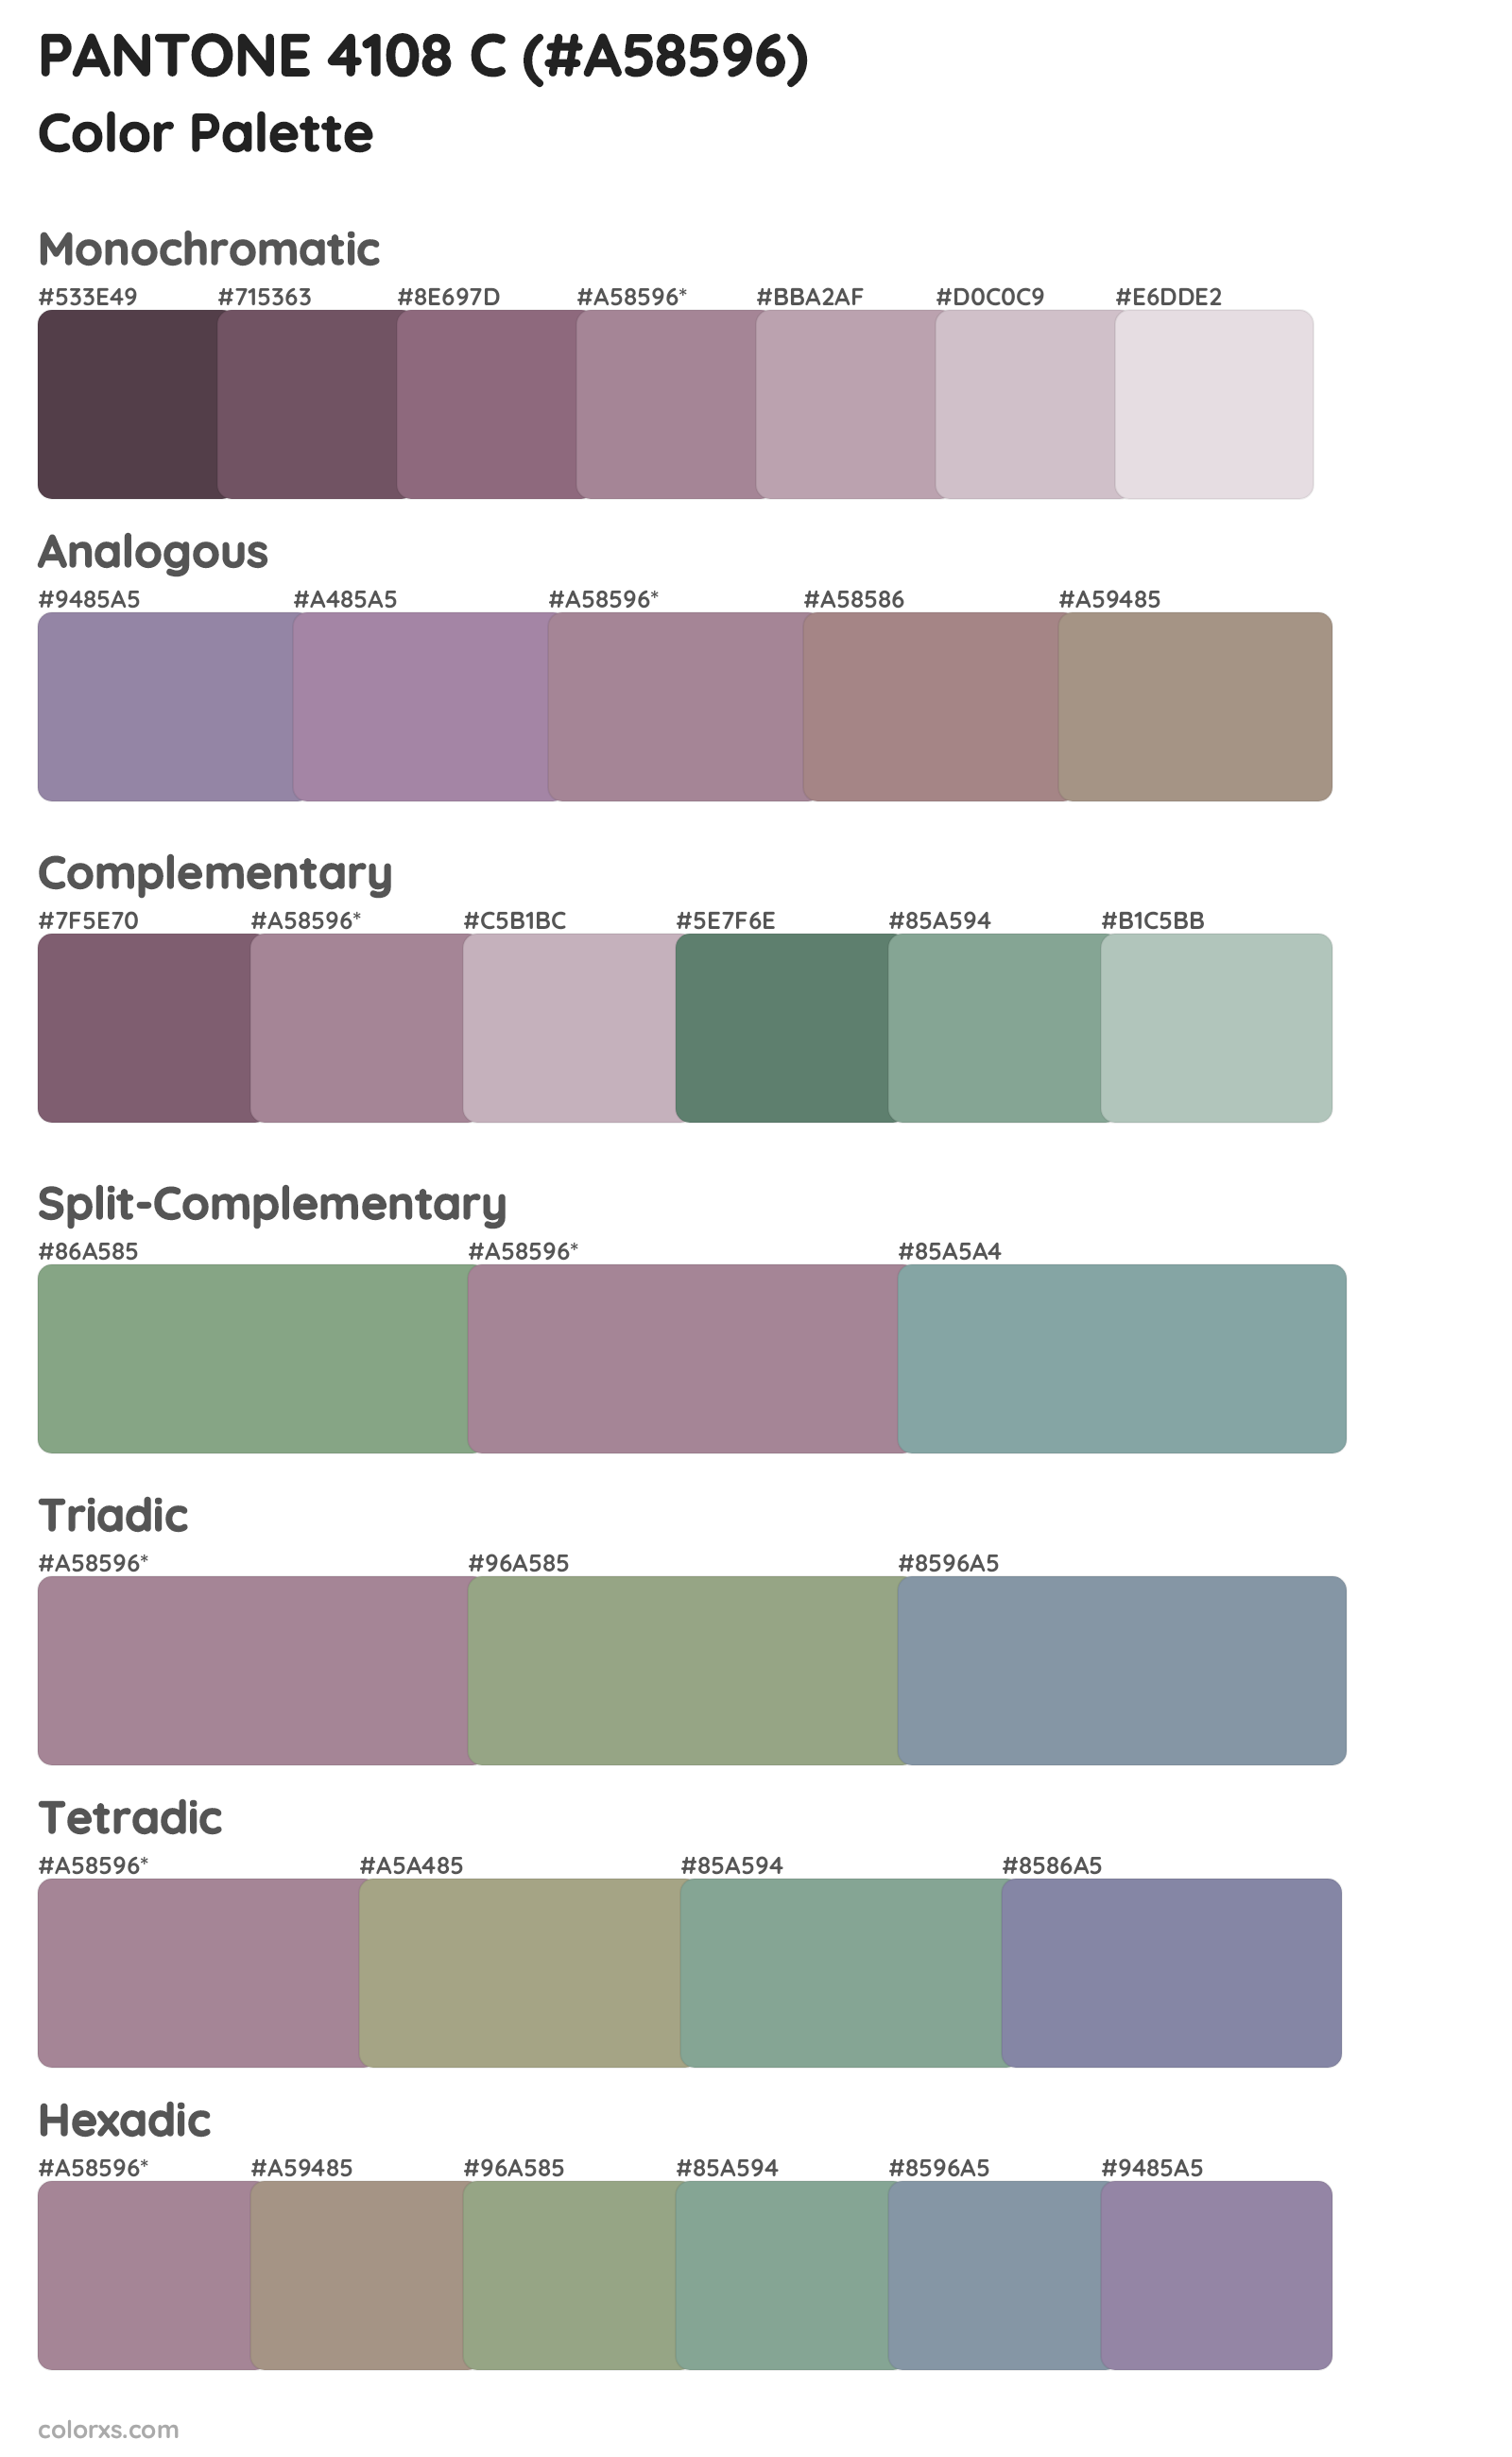 PANTONE 4108 C Color Scheme Palettes